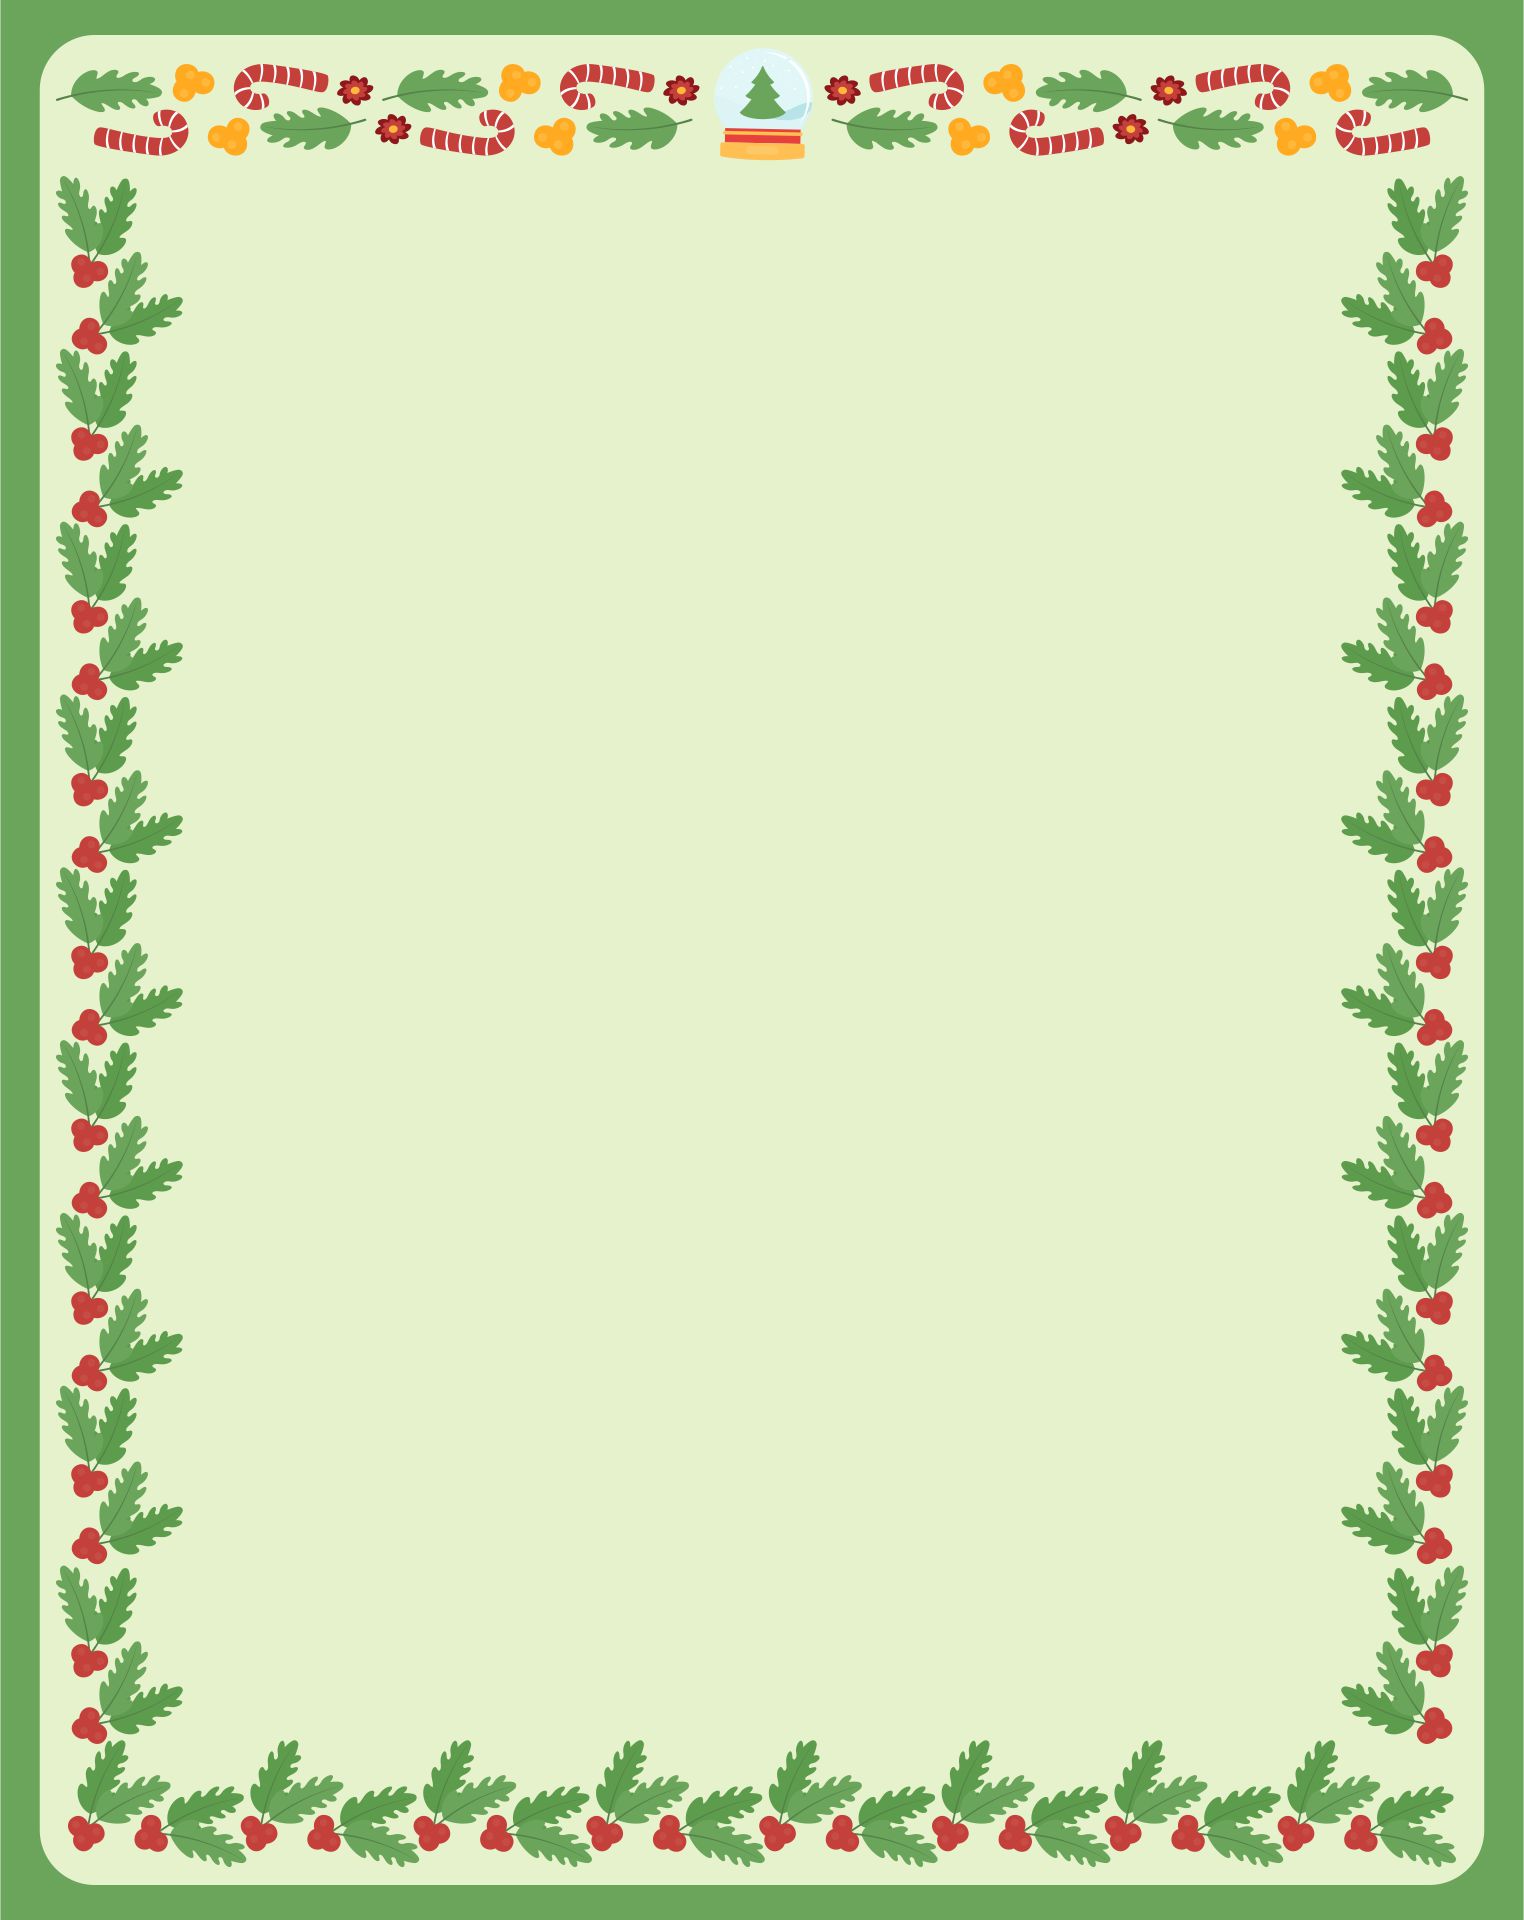 Printable Christmas Border Design